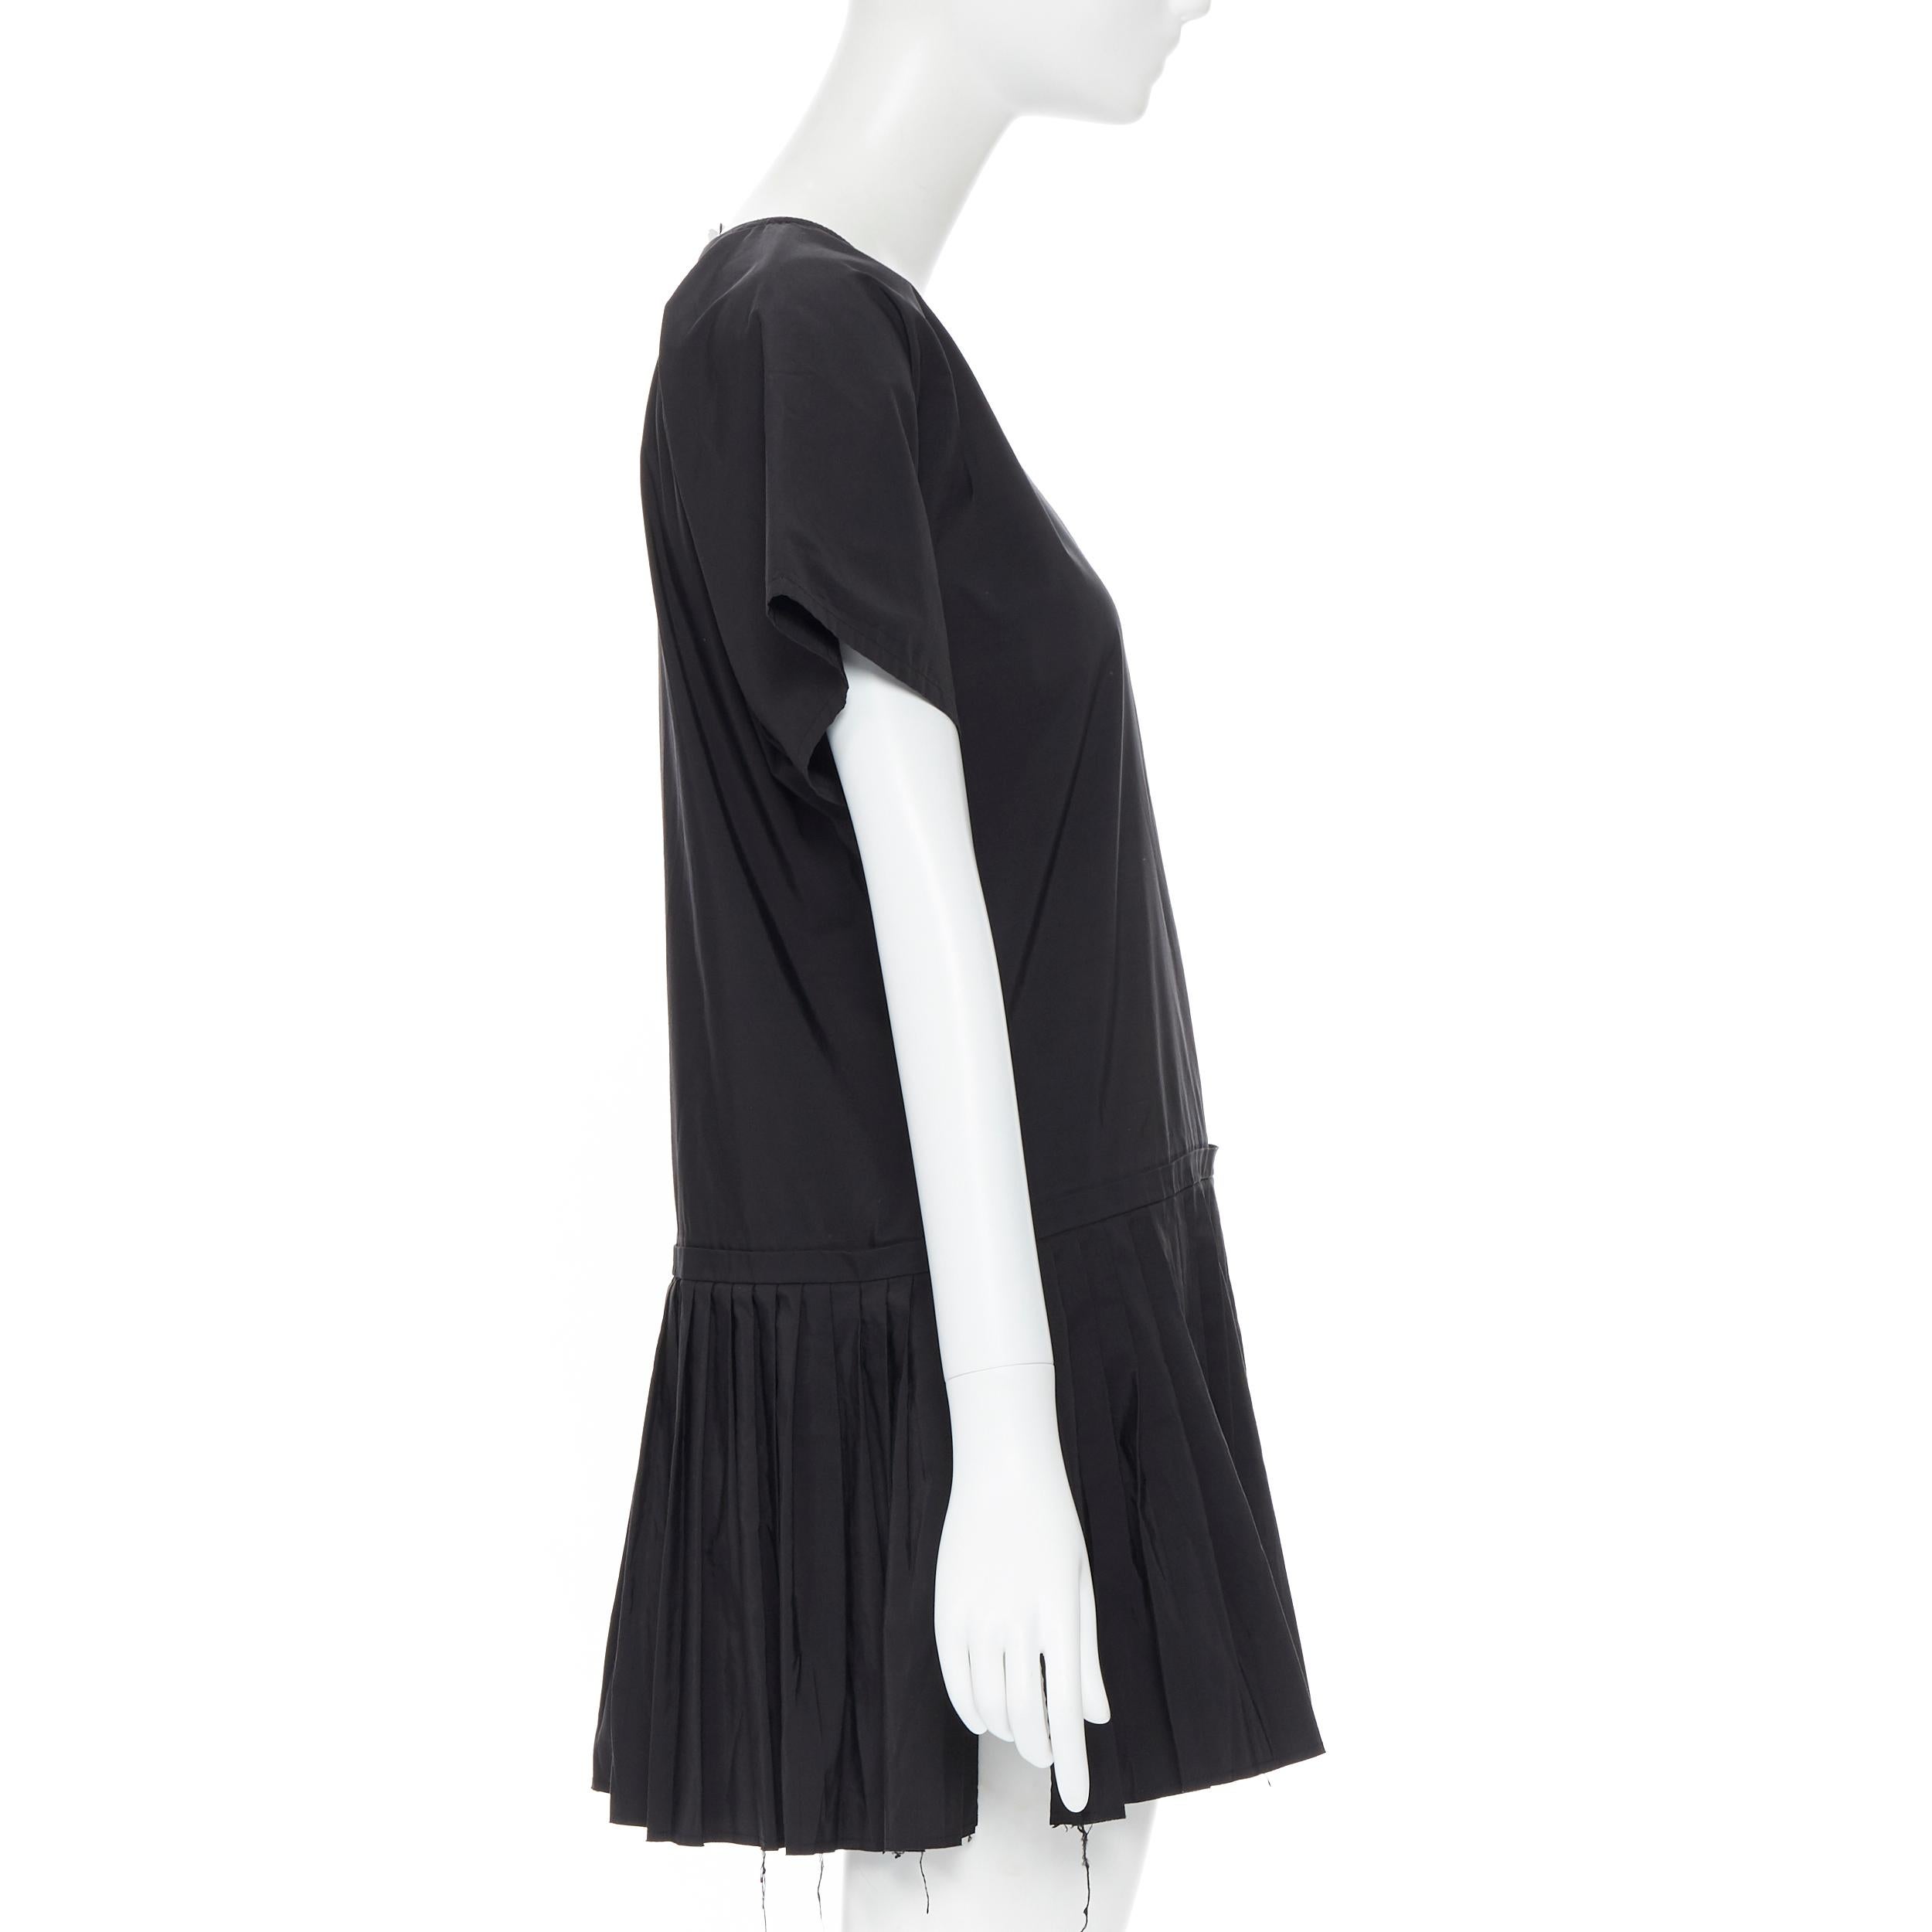 YVES SAINT LAURENT 2010 black pleated skirt side slit tunic dress EU39 / 15.5 1